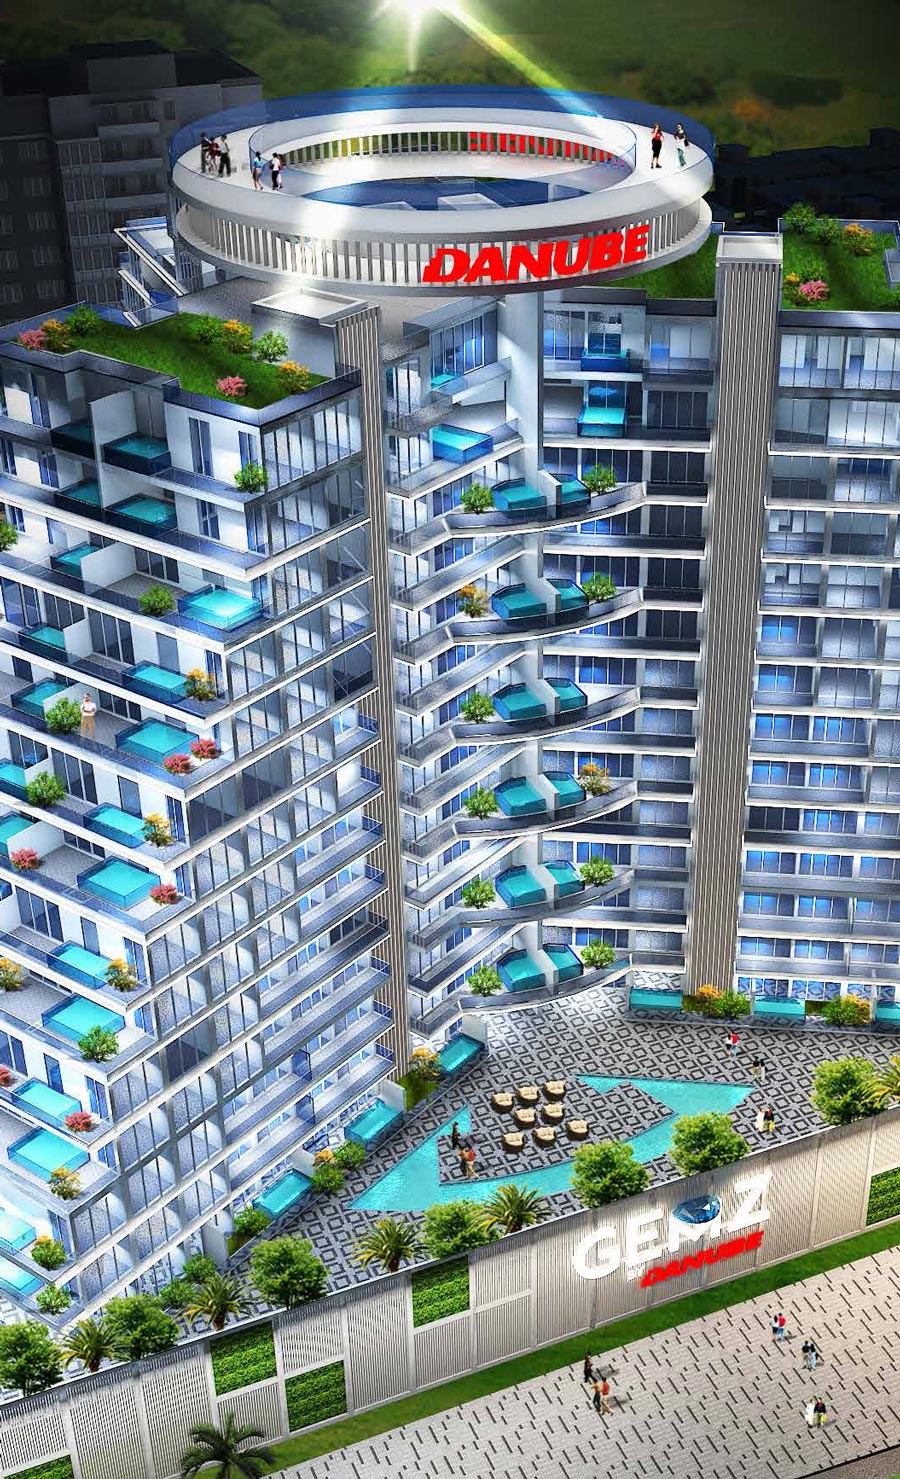 GEMZ by Danube Properties in Al Furjan, Dubai – Apartments for Sale